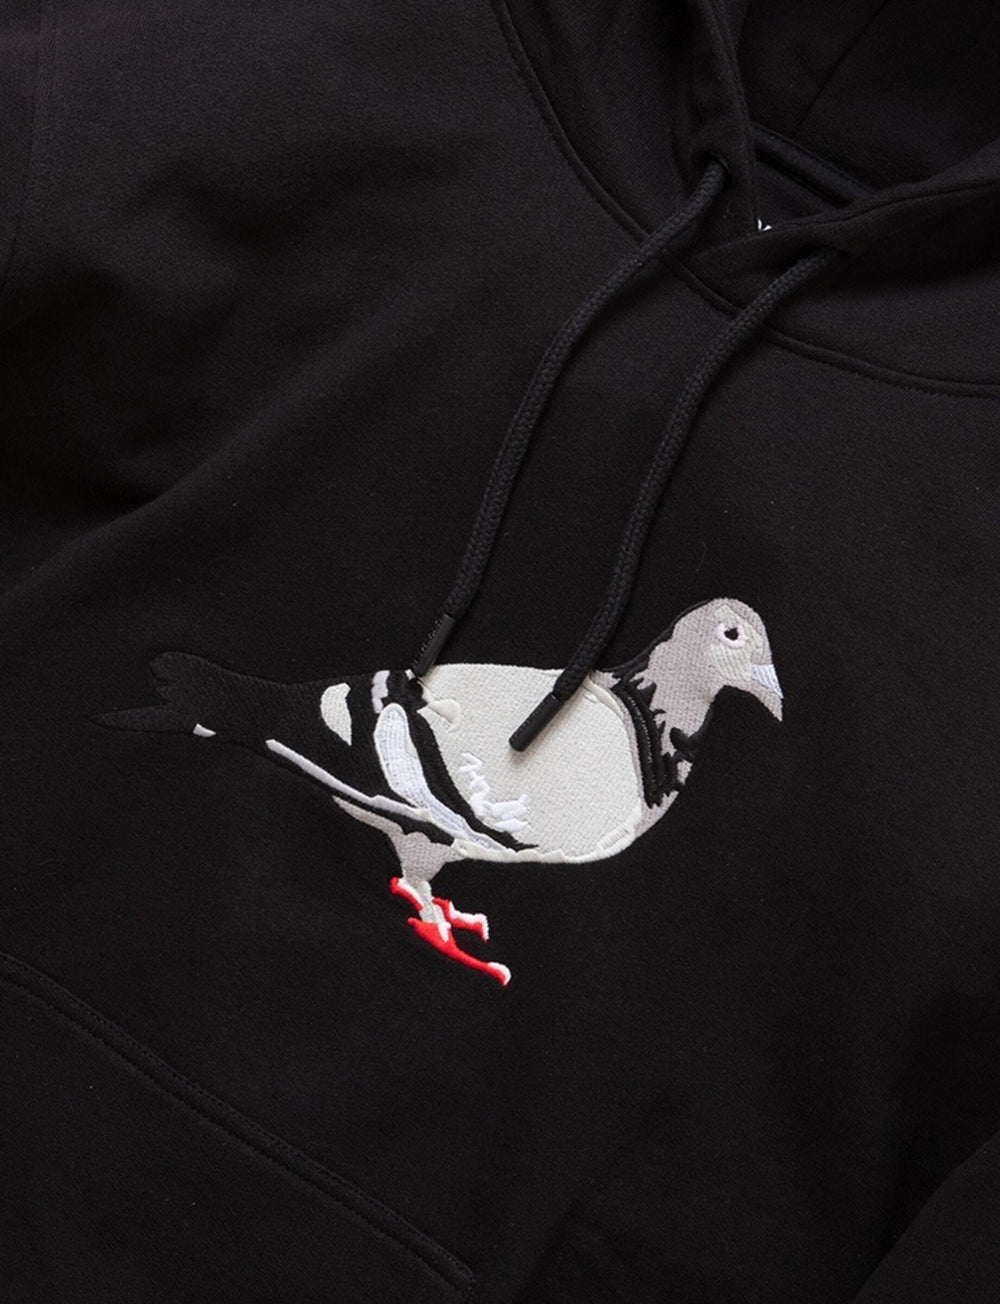 Pigeon Logo Hoodie Black